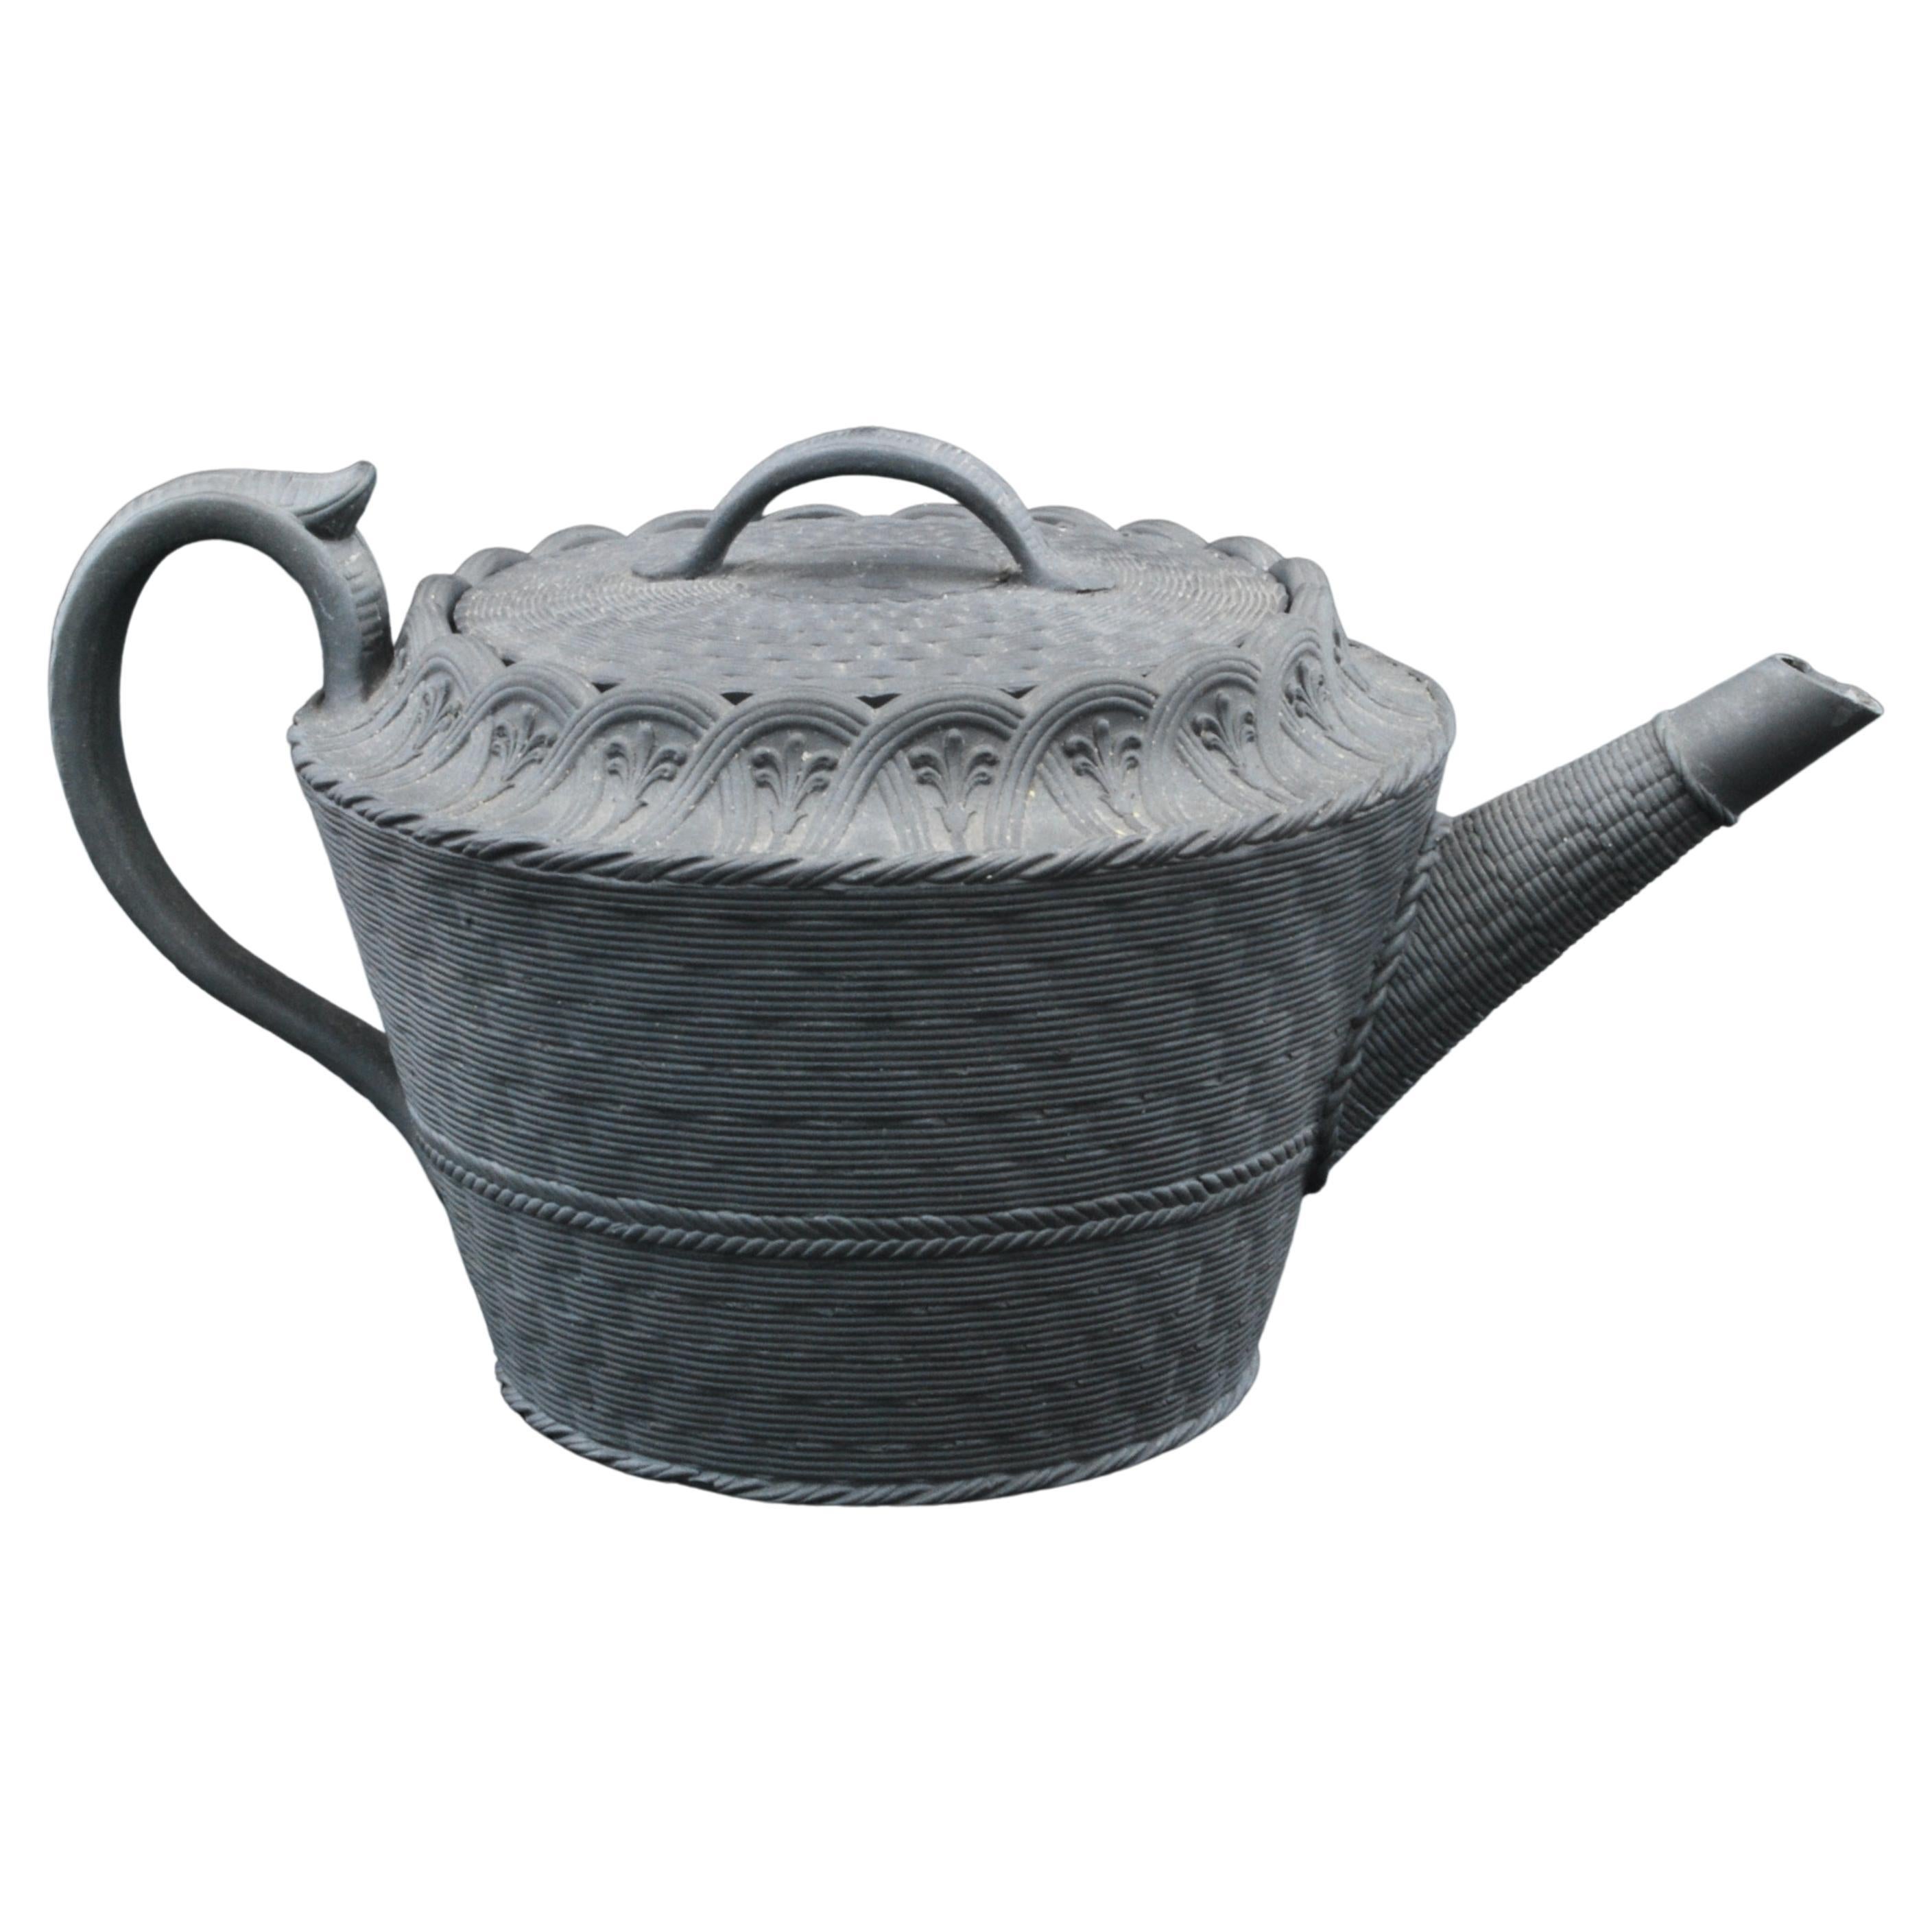 Basket-Weave Teapot in Black Basalt, Wedgwood C1790 For Sale